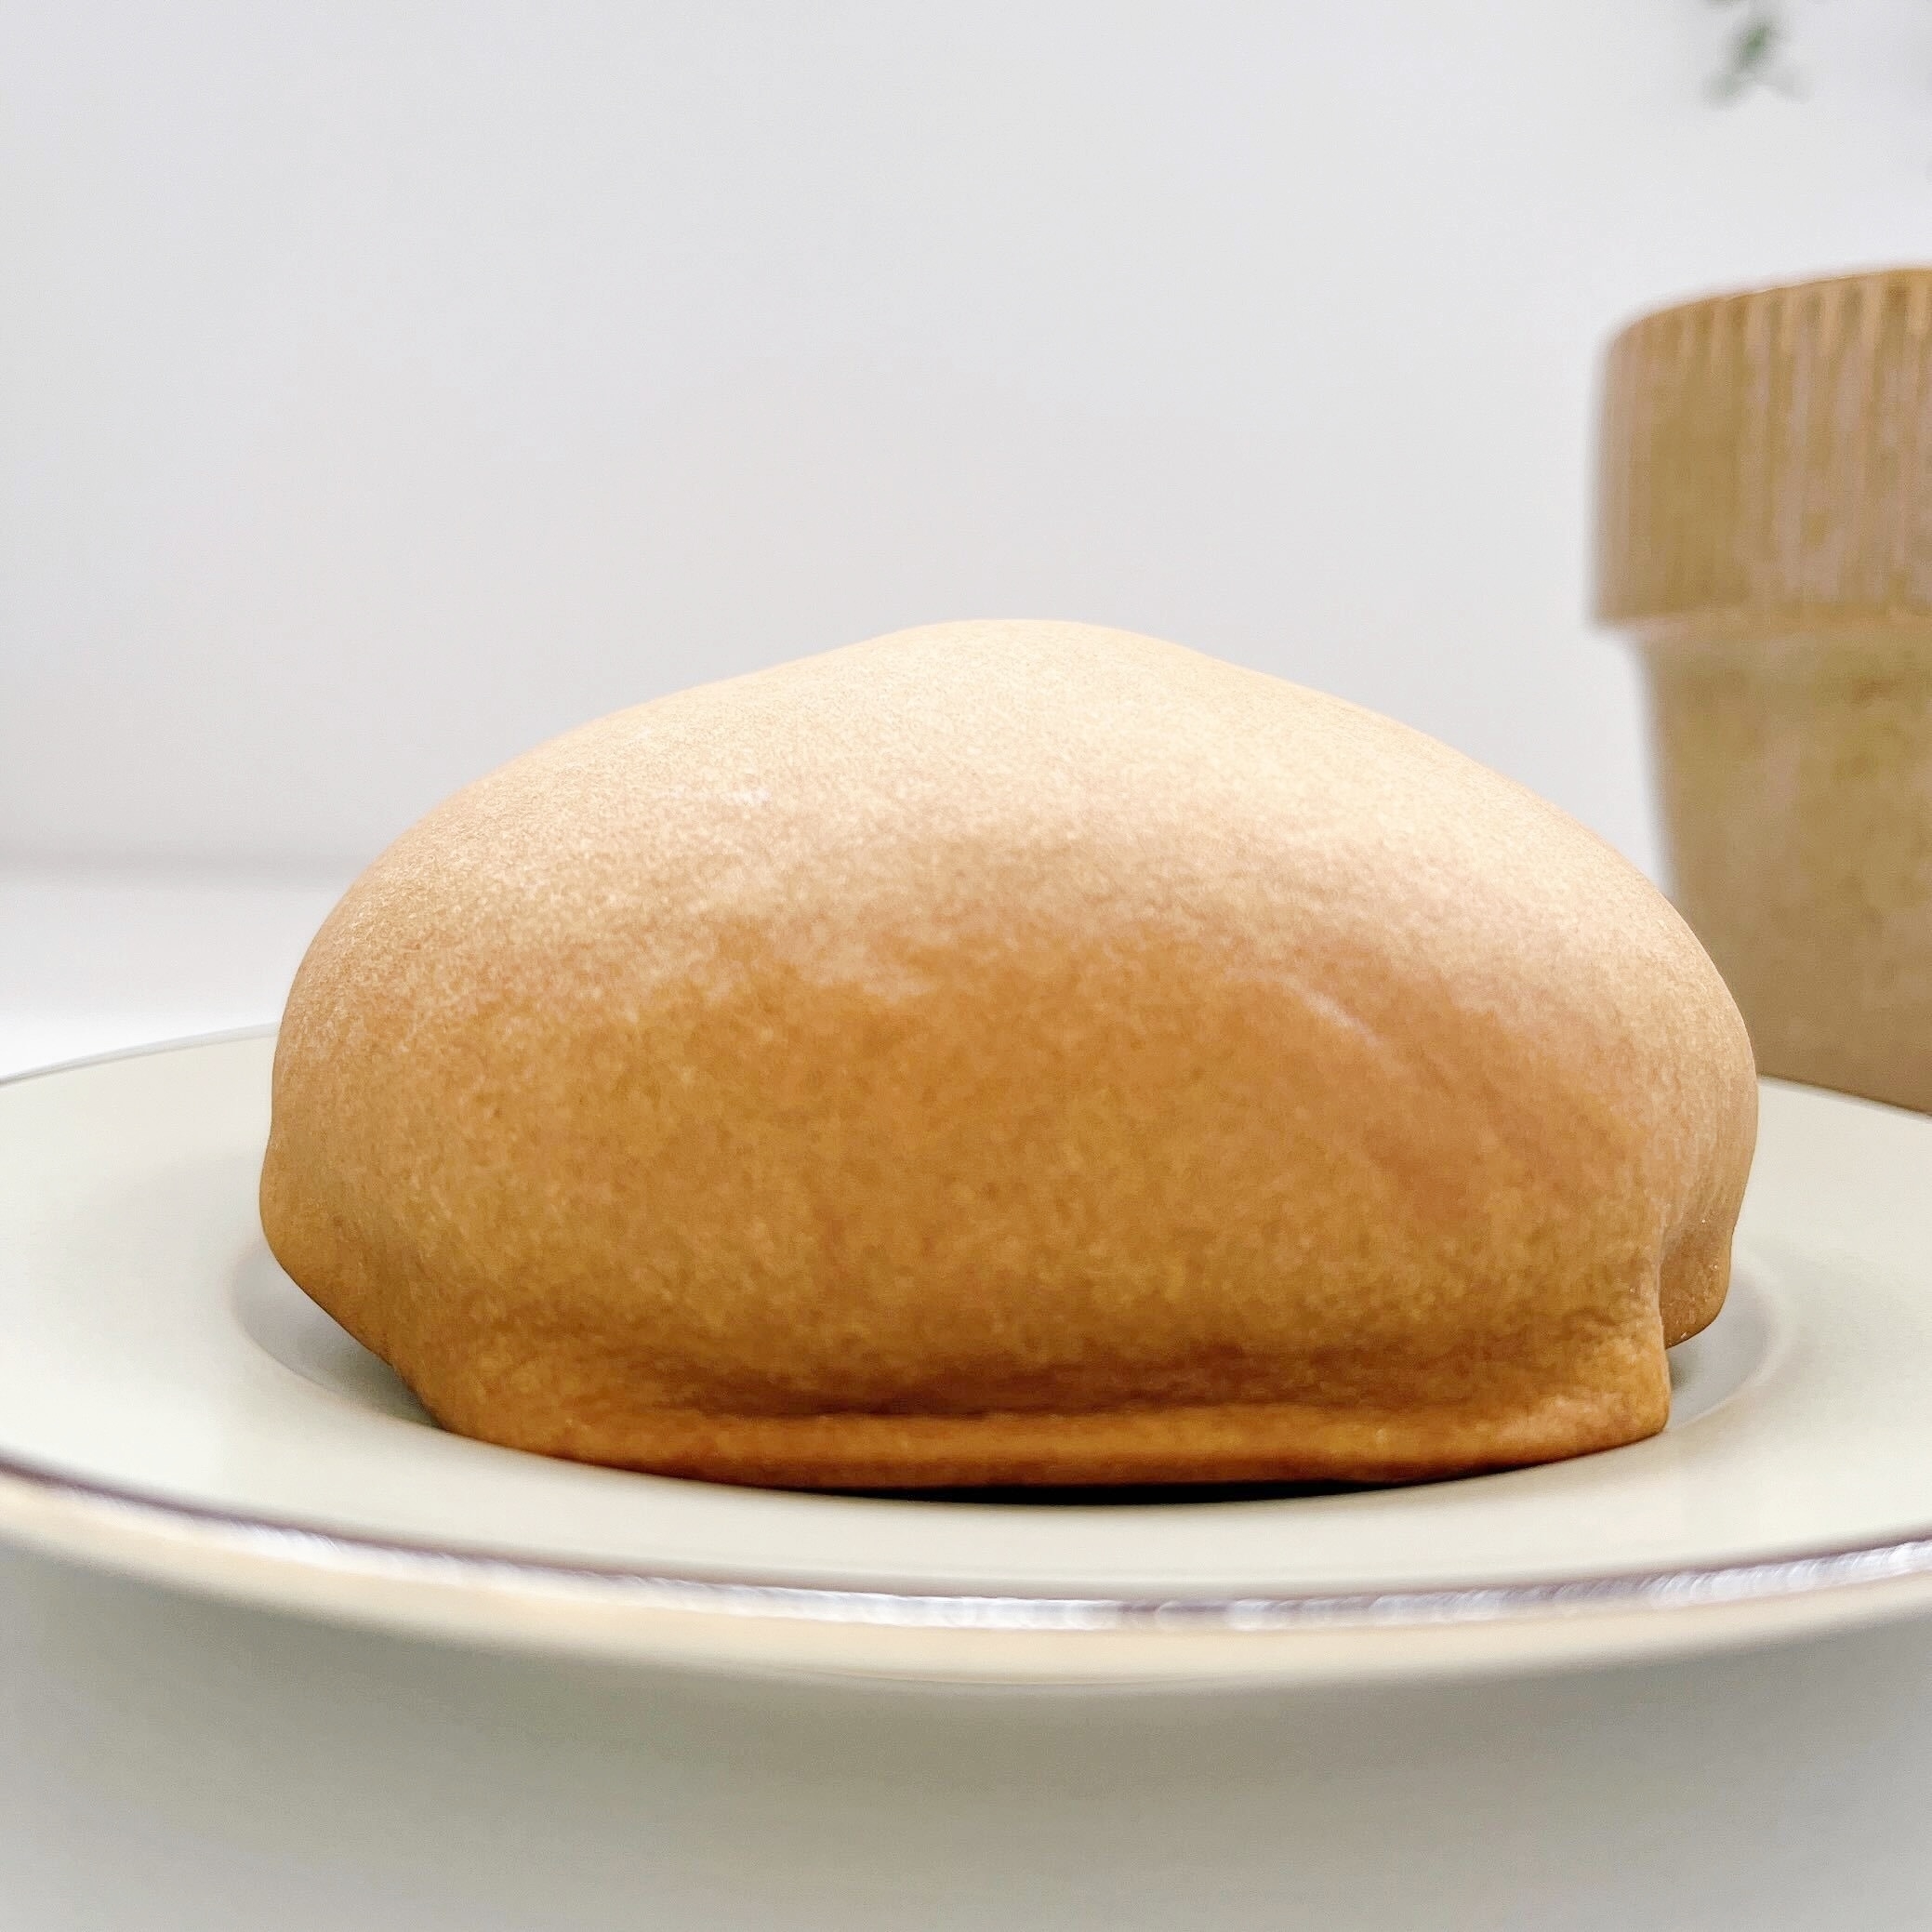 FamilyMart（ファミリーマート）のオススメのパン「もちっと食感のイタリア栗パン」